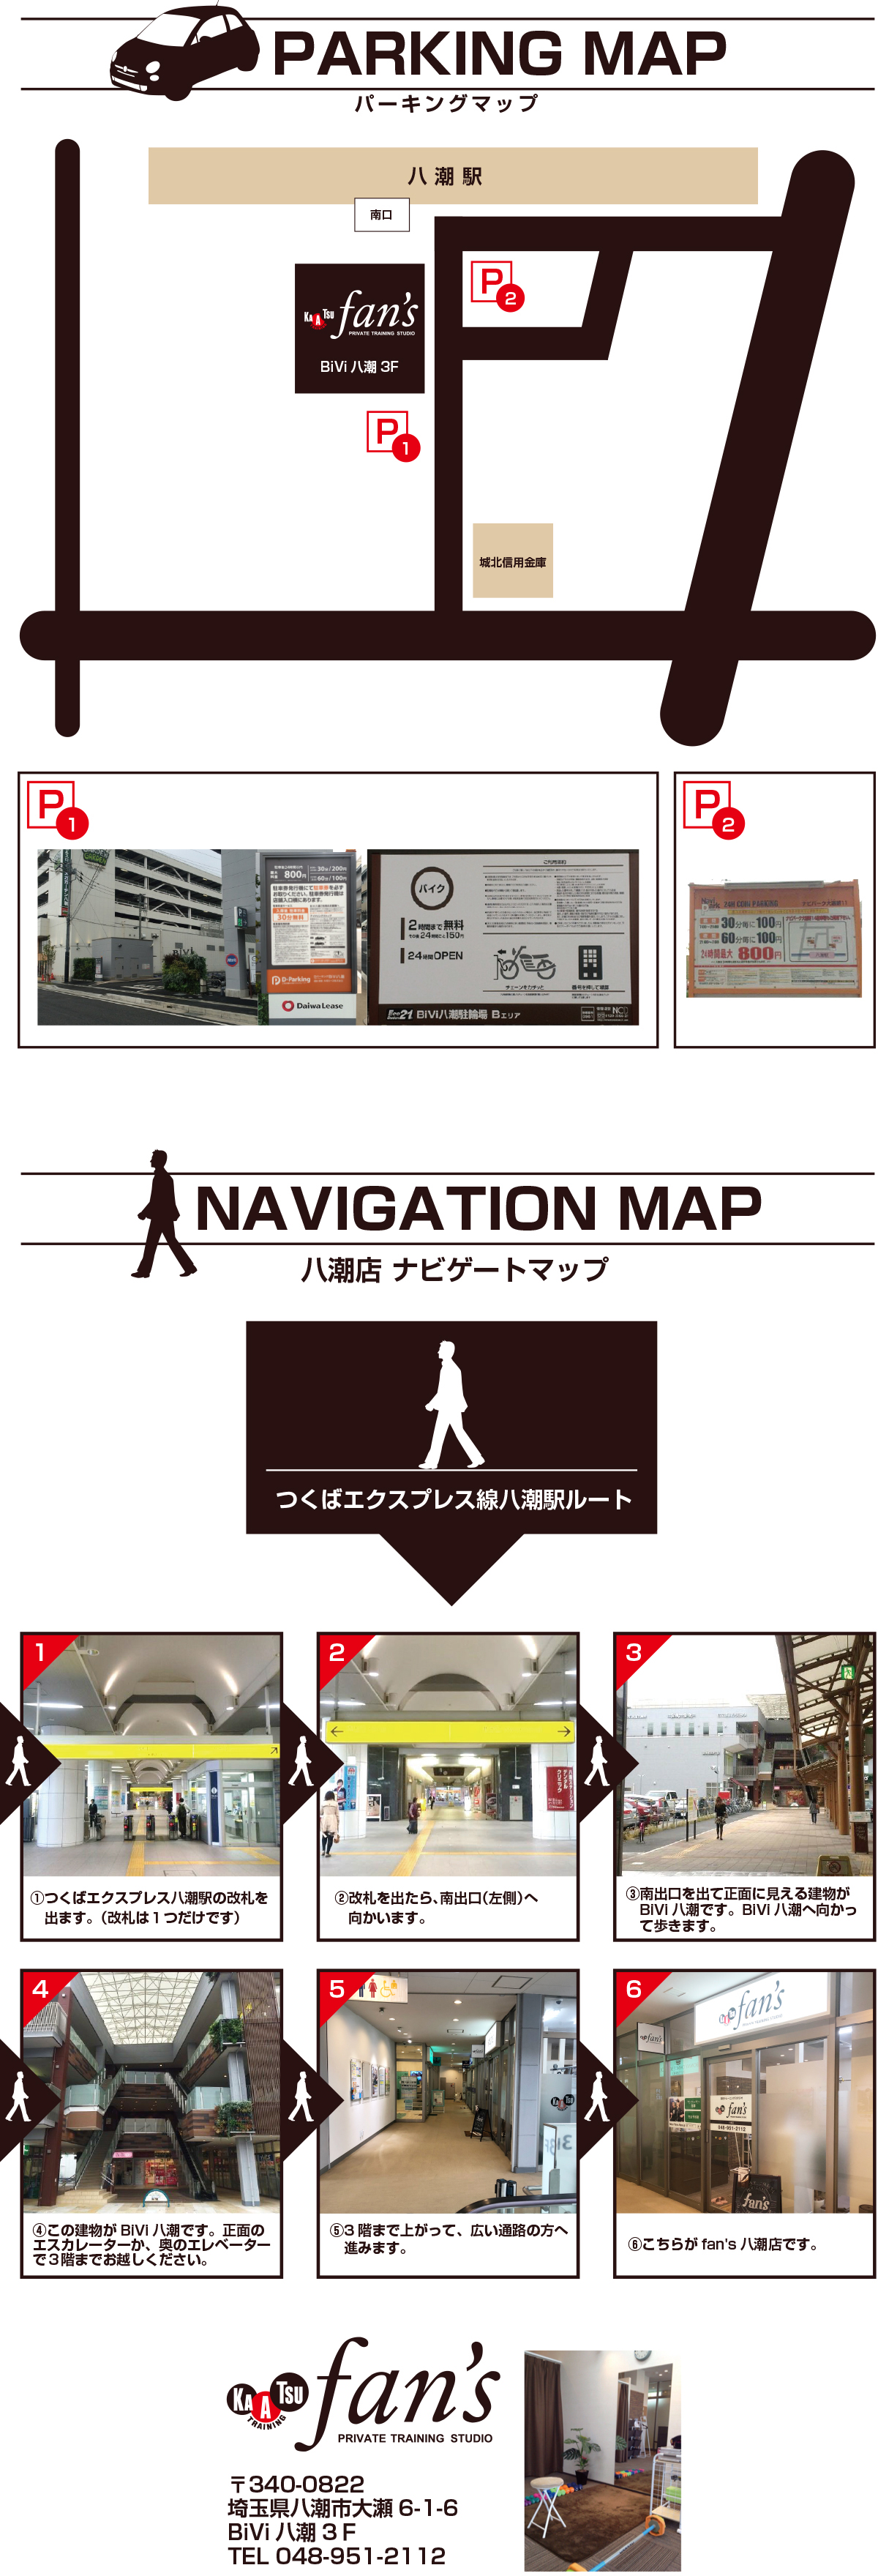 fan's八潮店パーキングマップ